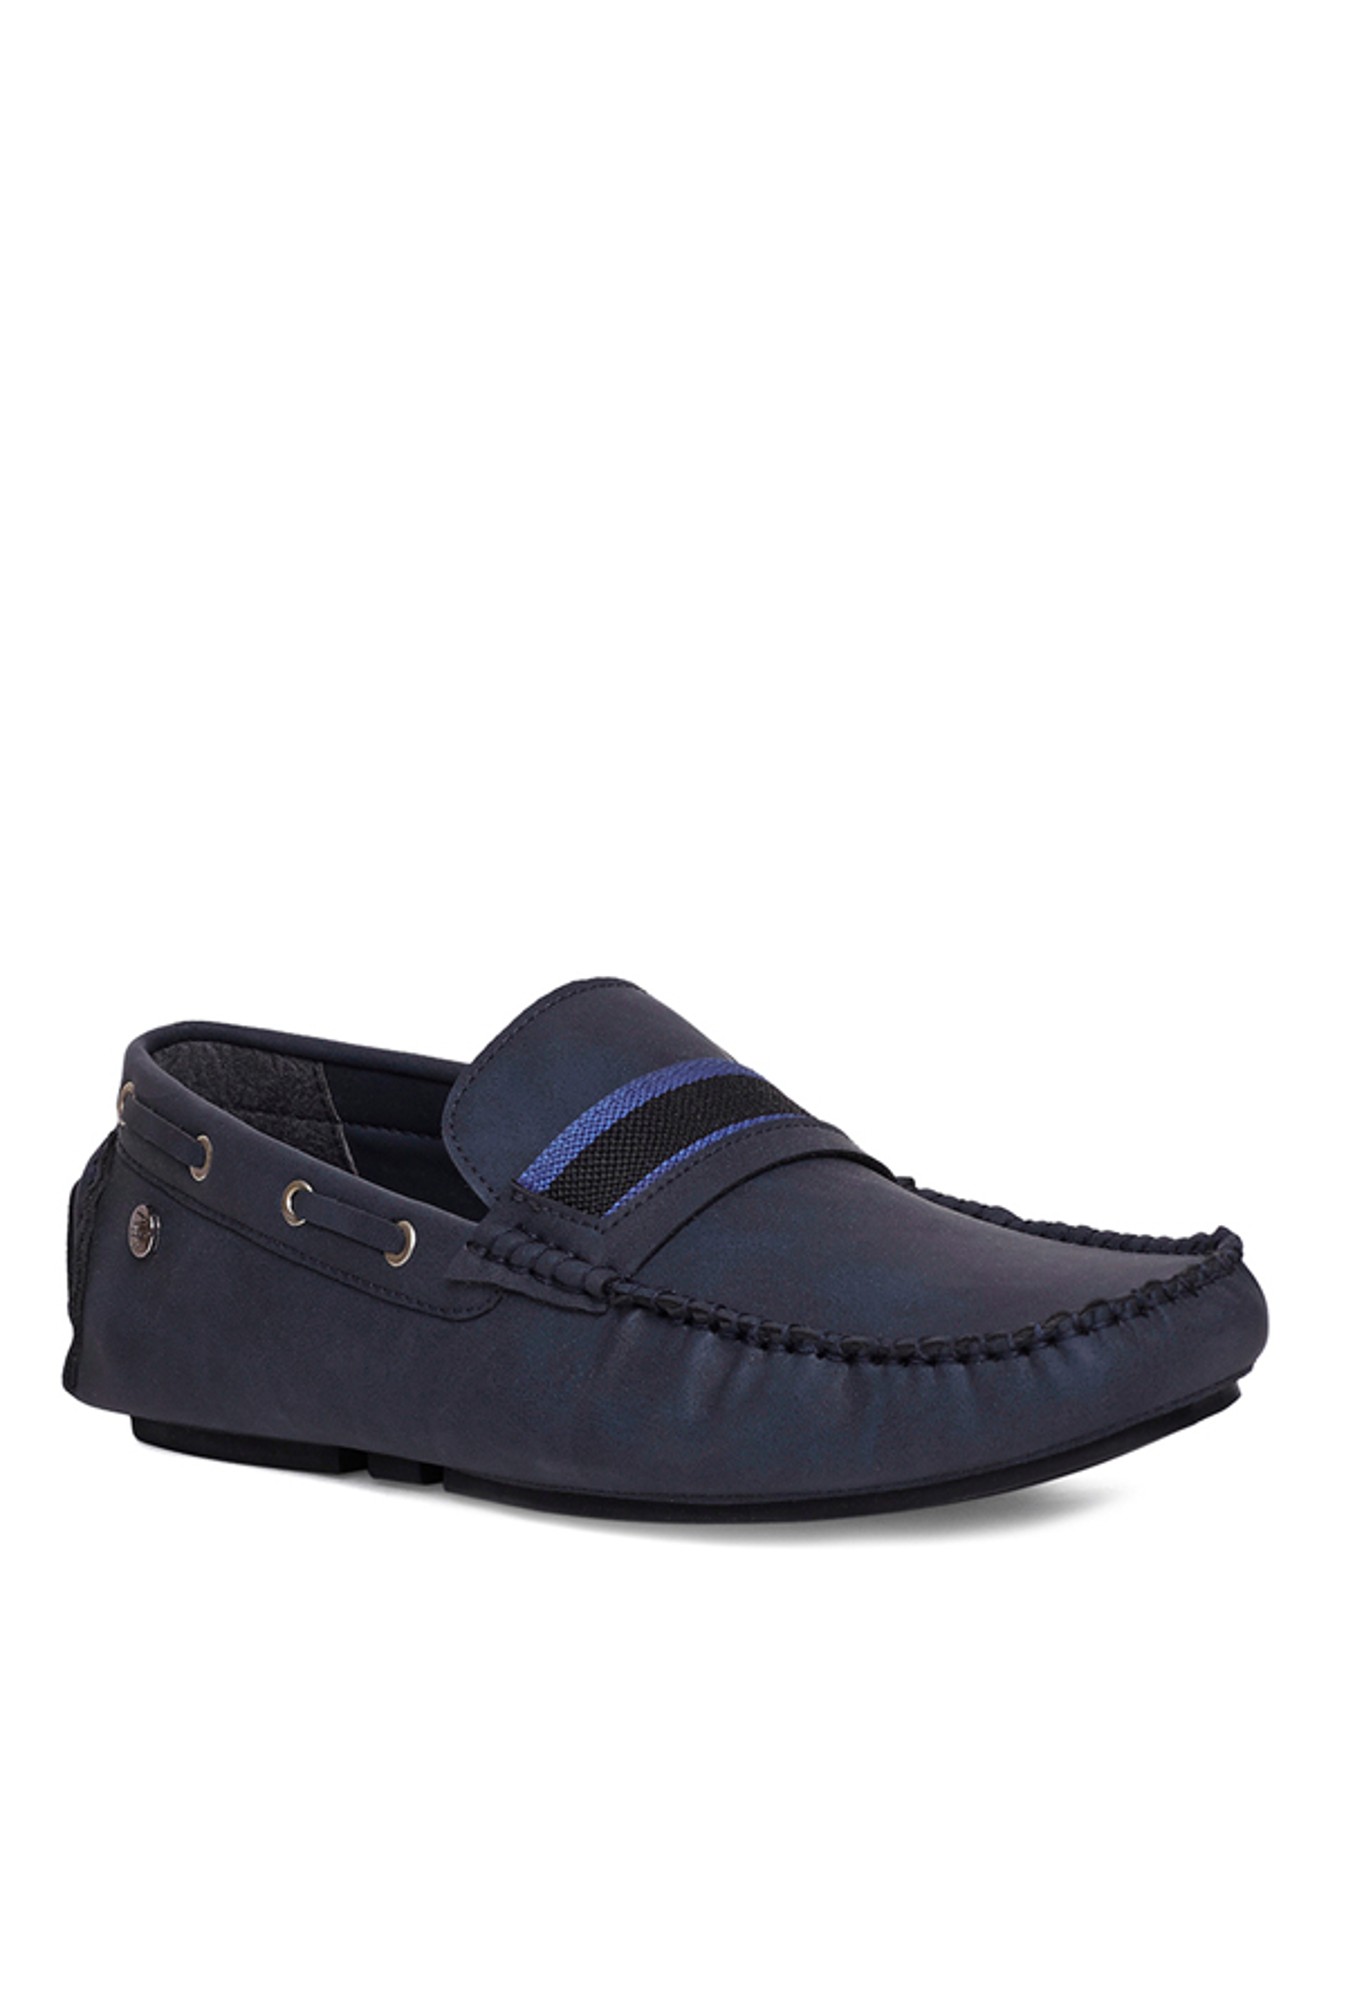 Shop Selfridges Men's Boat Shoes | DealDoodle